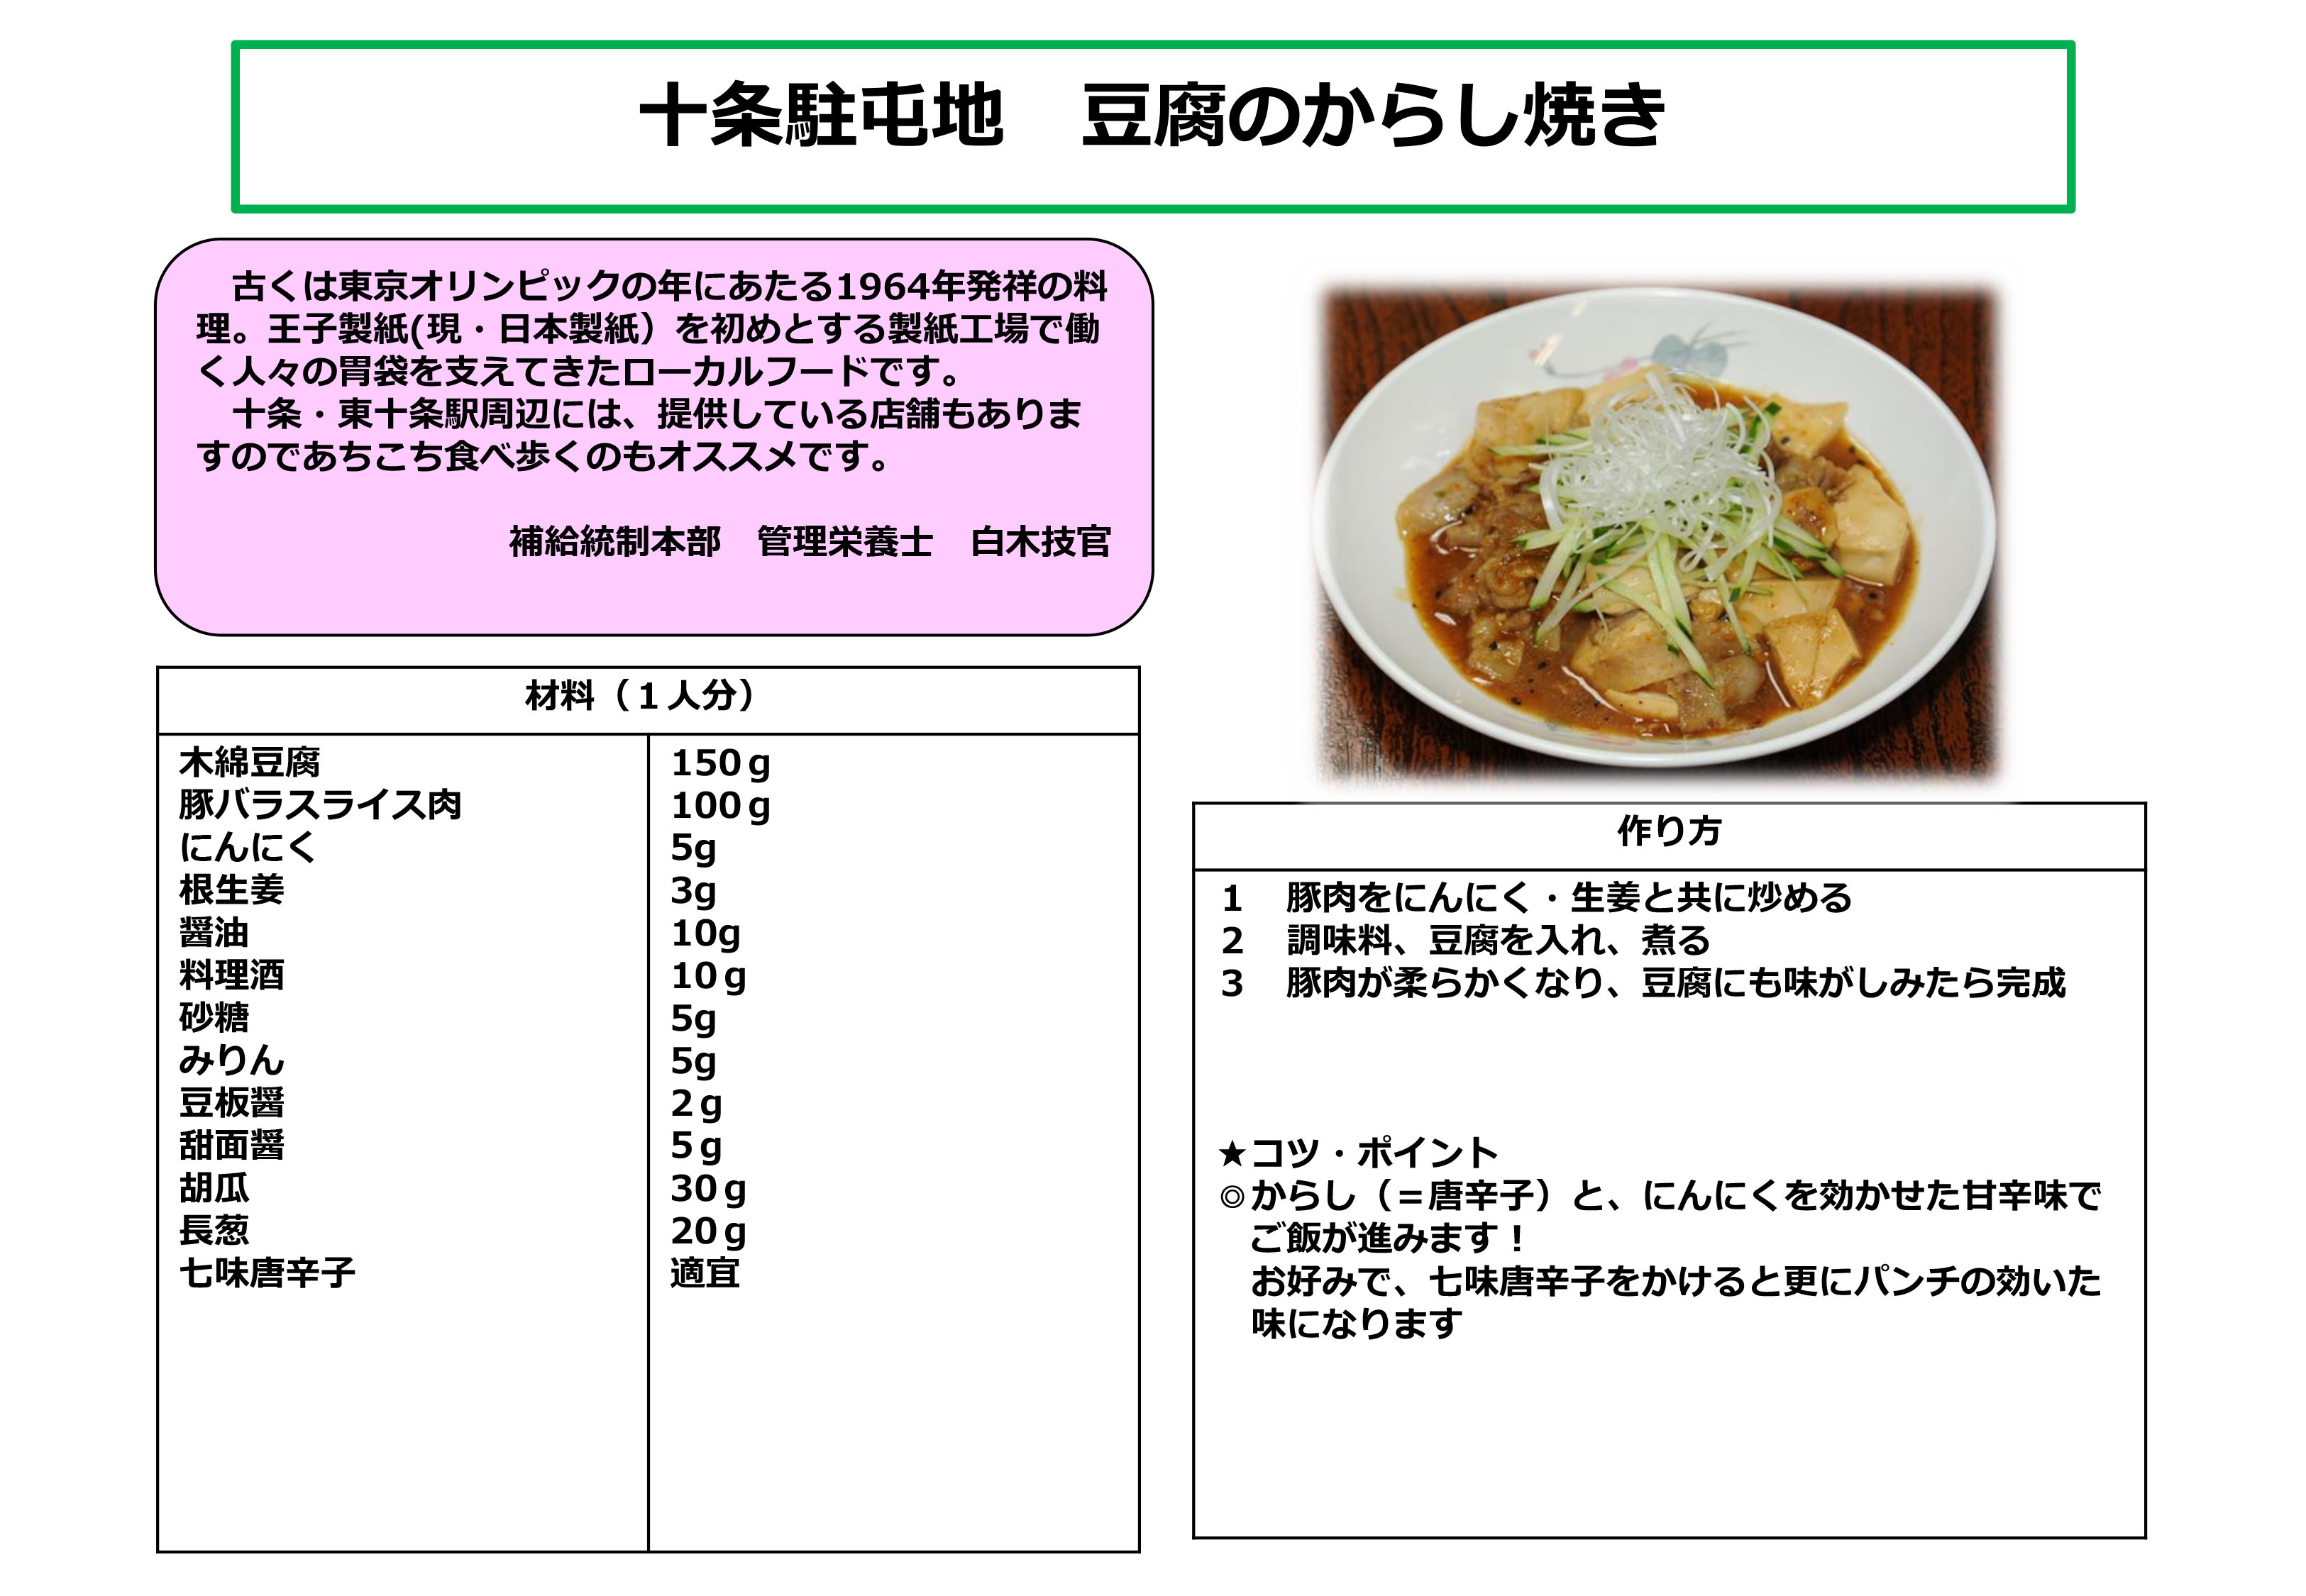 十条駐屯地「豆腐のからし焼き」レシピ